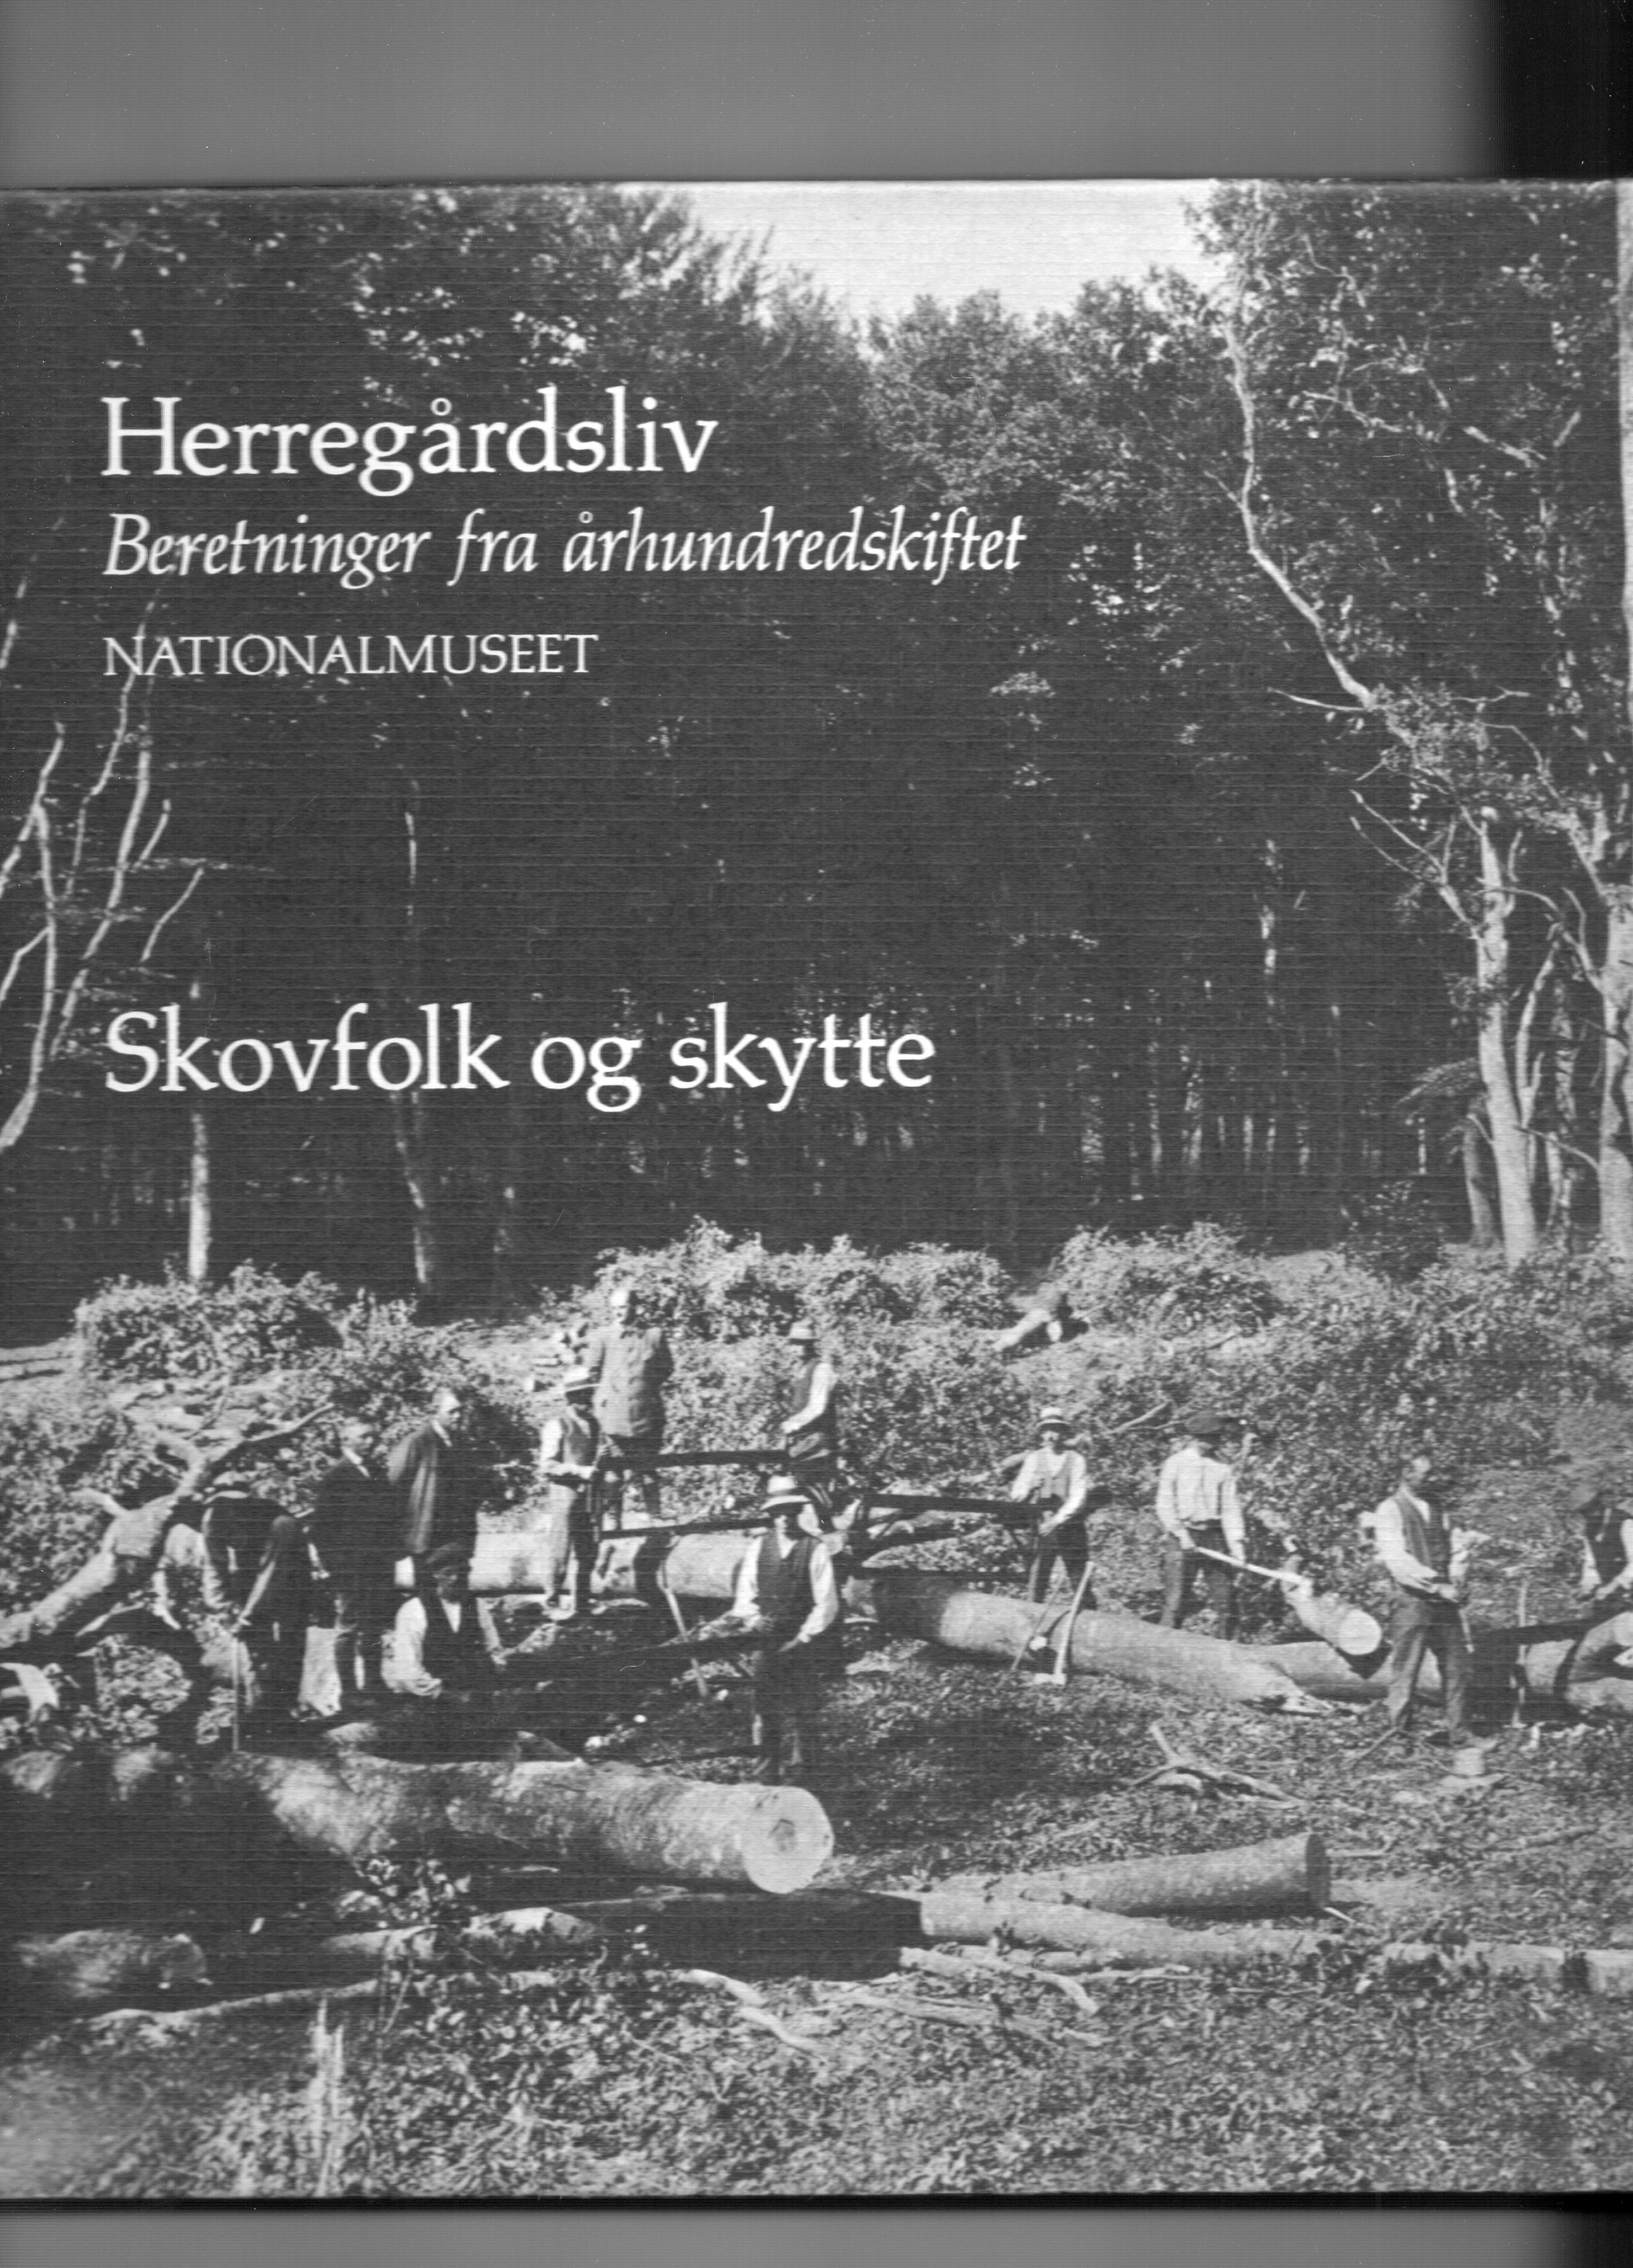 Herregårdsliv 4 Beretninger fra århundreårsskiftet Nationalmuseet 1981 Skovfolk og skytte Ole Højrup B